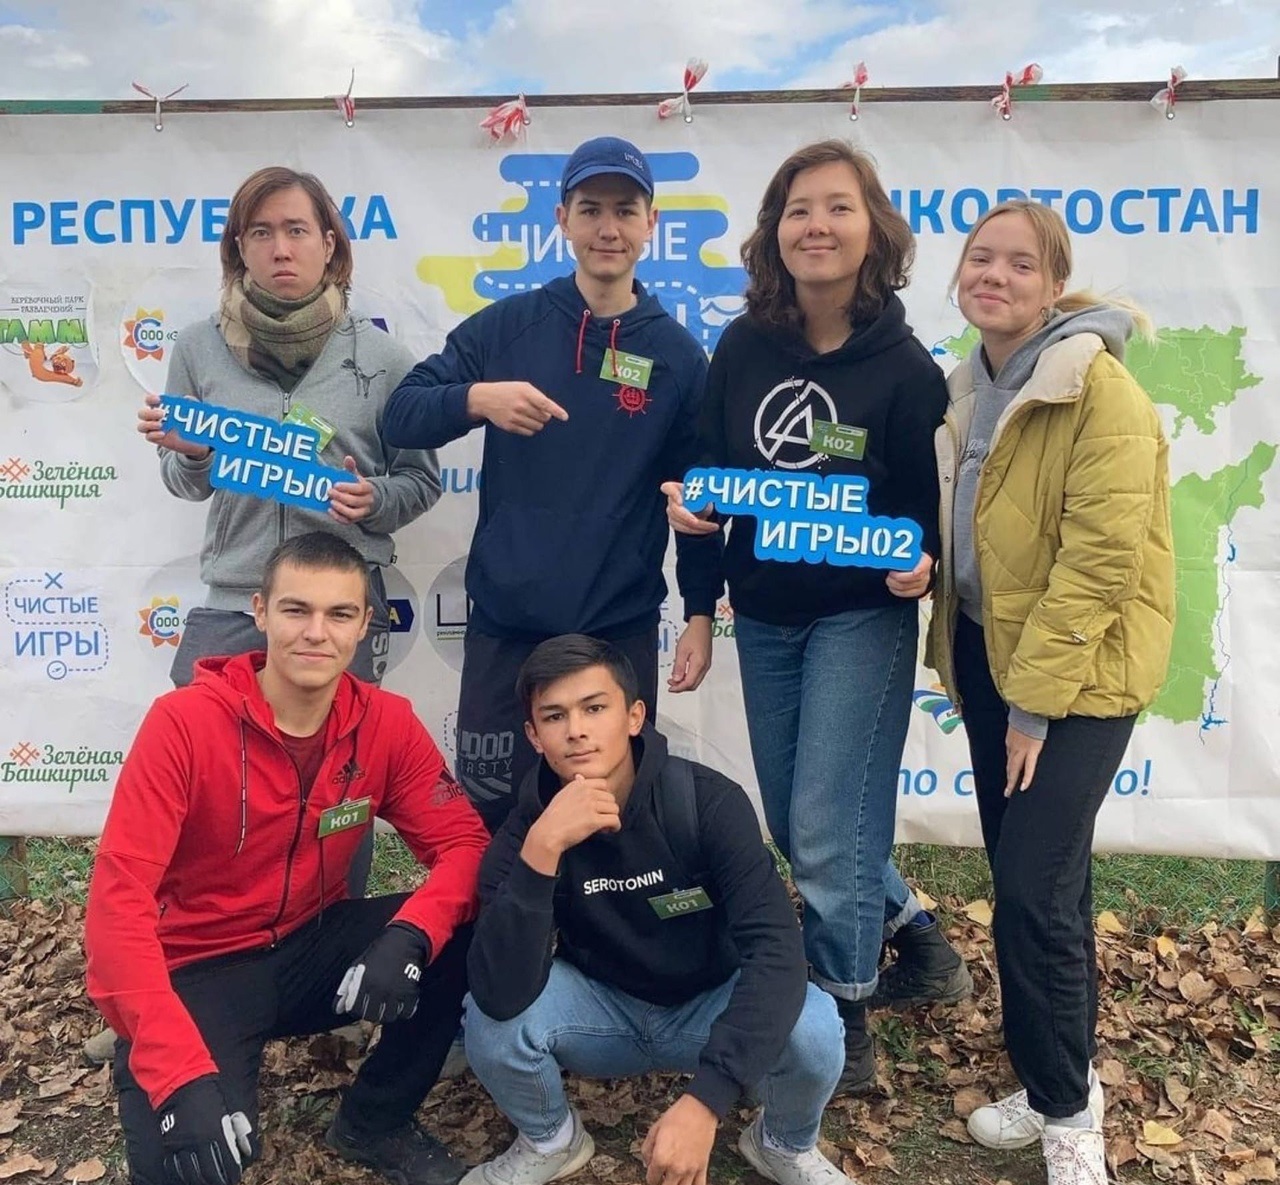 Волонтеры Зеленого проекта УГАТУ победили в «Чистых играх»